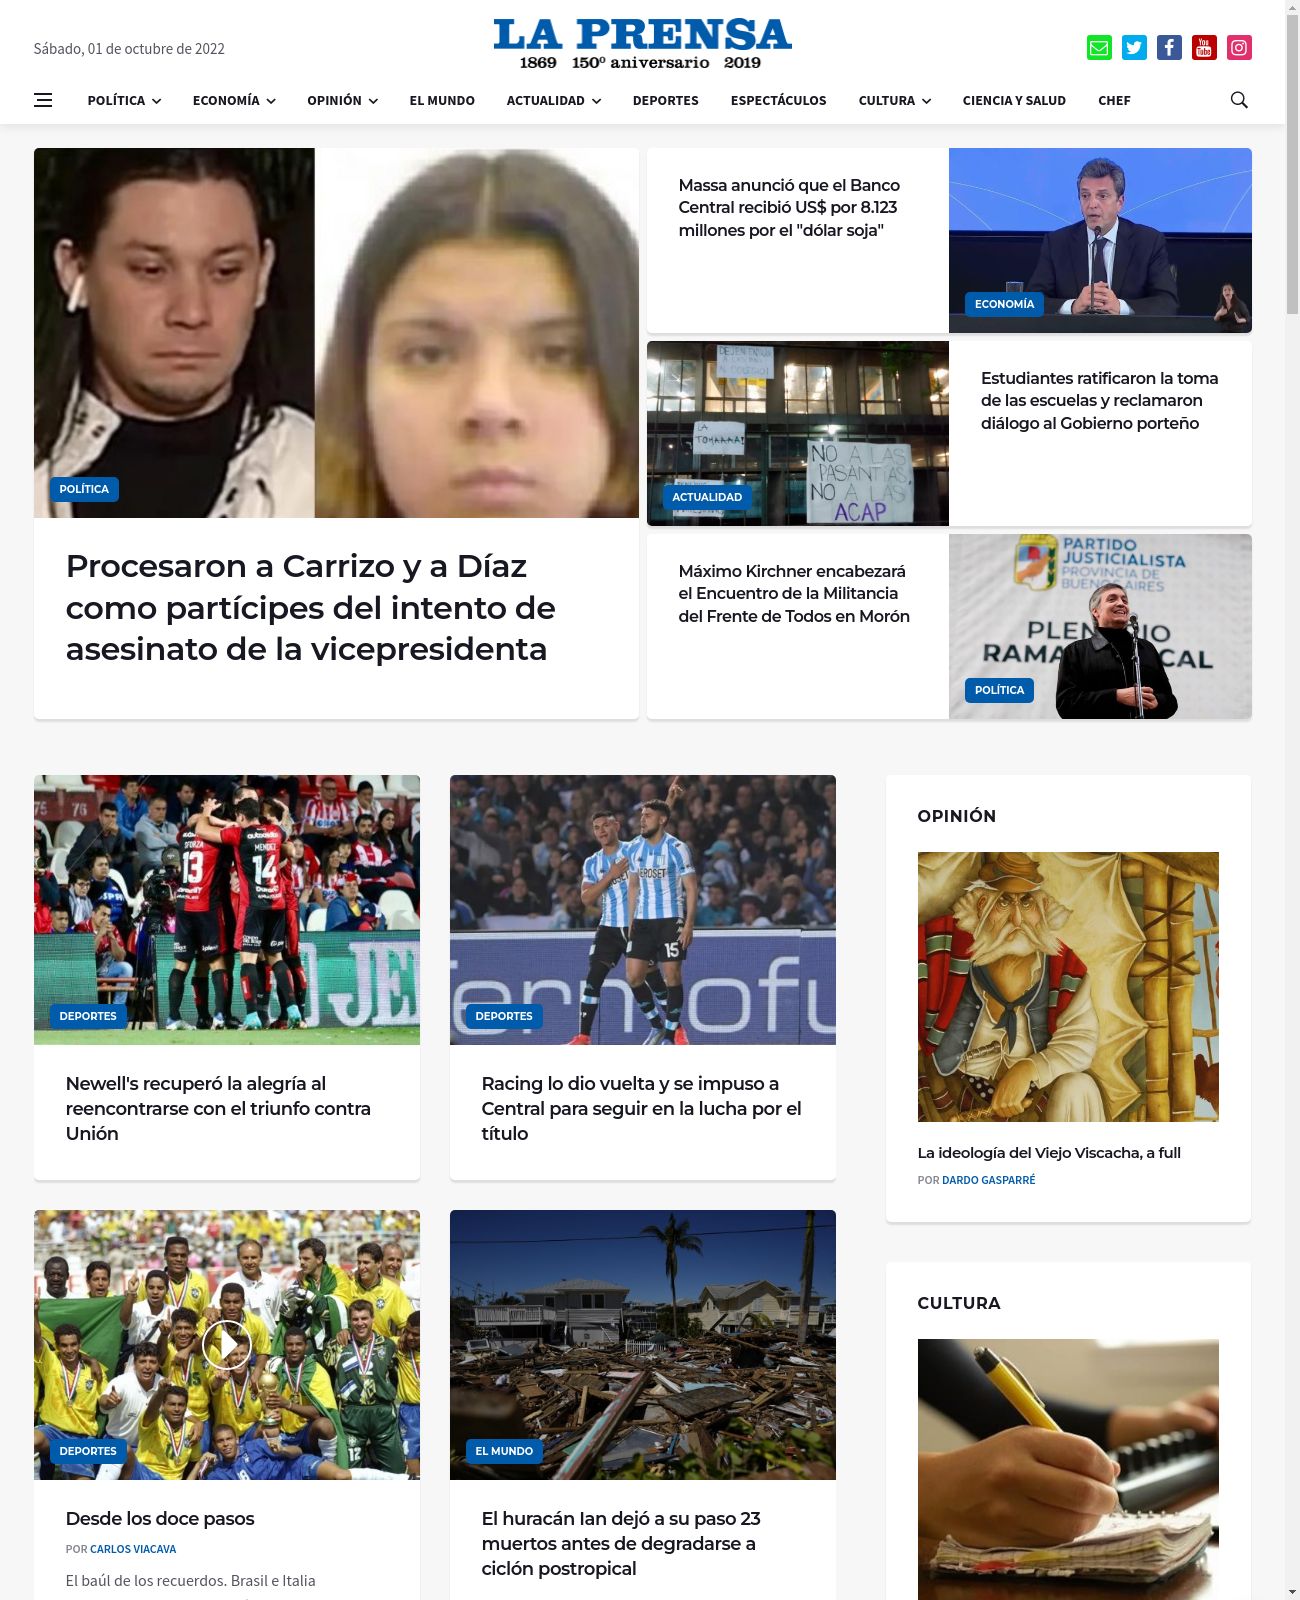 La Prensa at 2022-10-01 09:54:29-03:00 local time